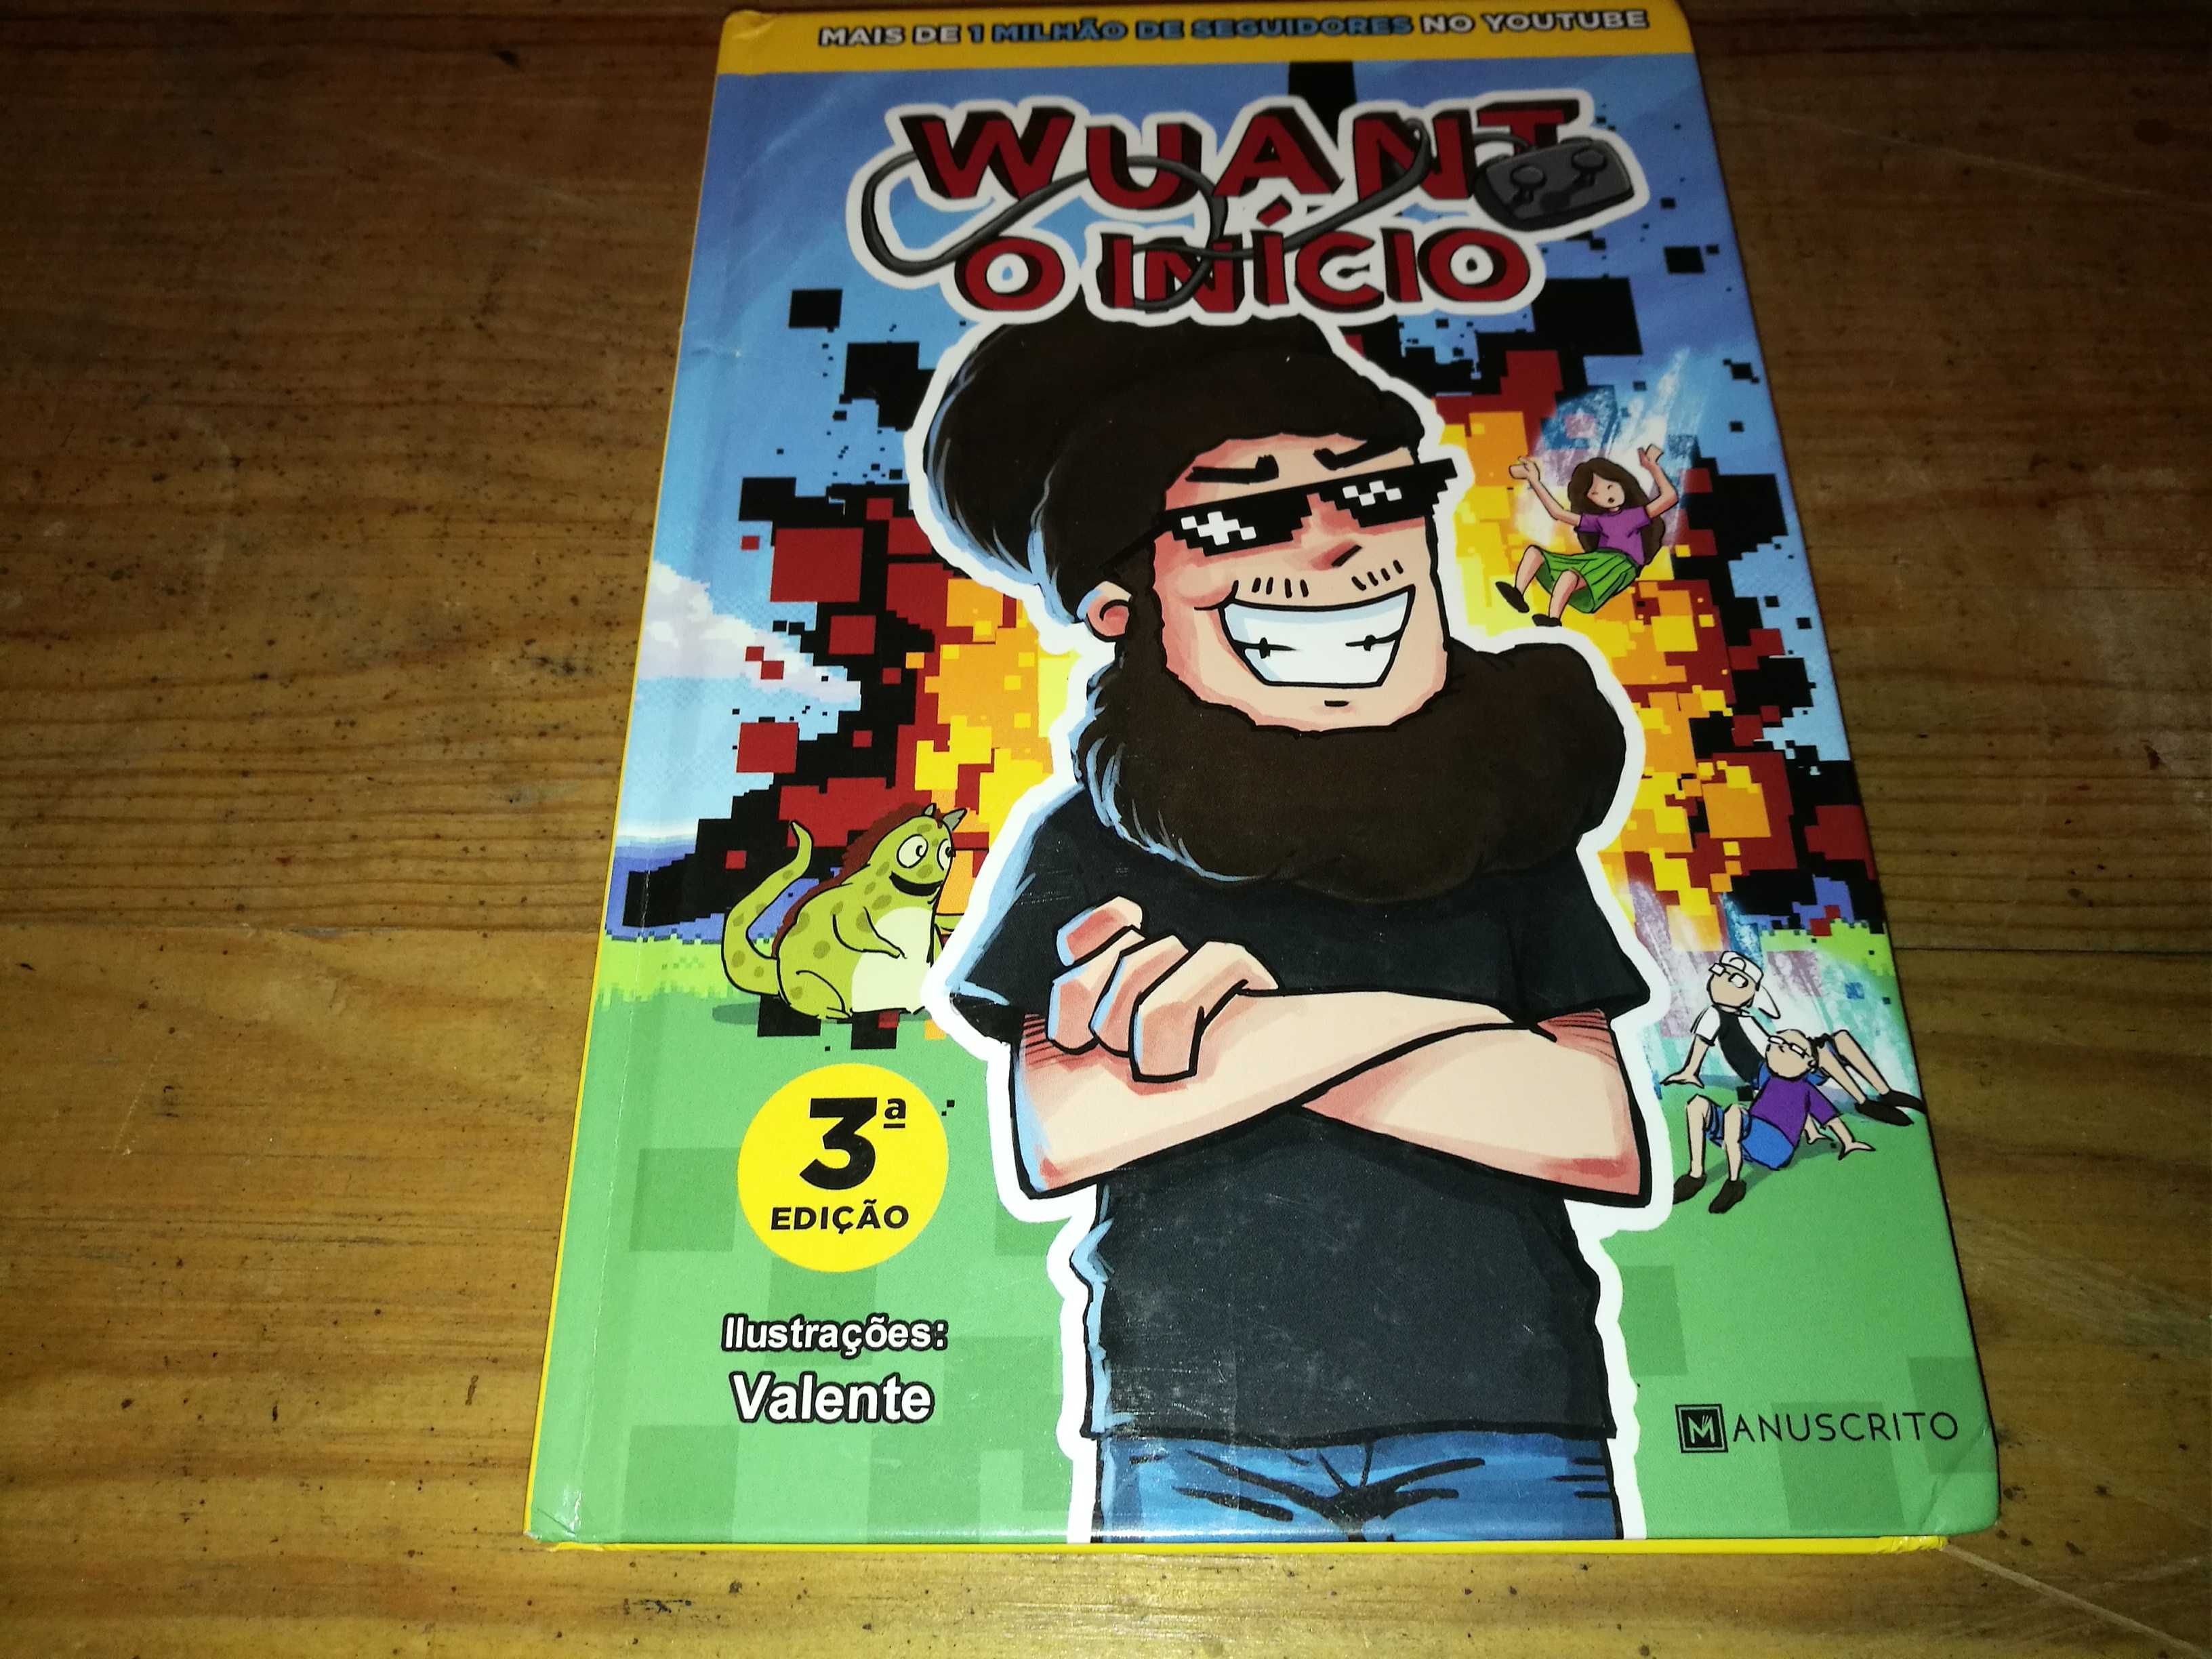 Wuant - O Início 3ª edição